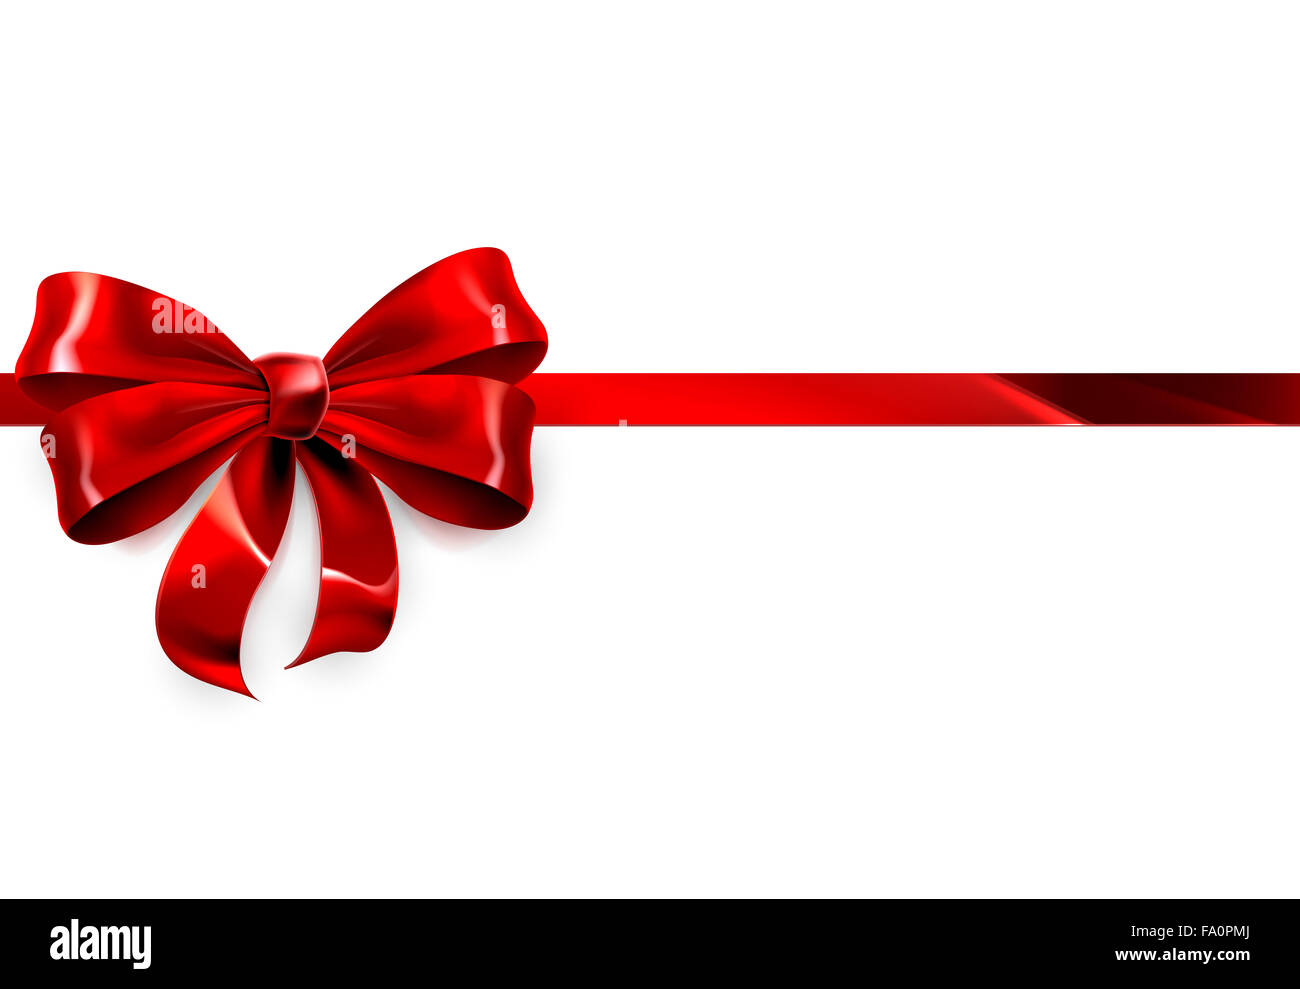 Una illustrazione di un bel nastro rosso e la prua su un bianco Natale, compleanno o altro dono Foto Stock